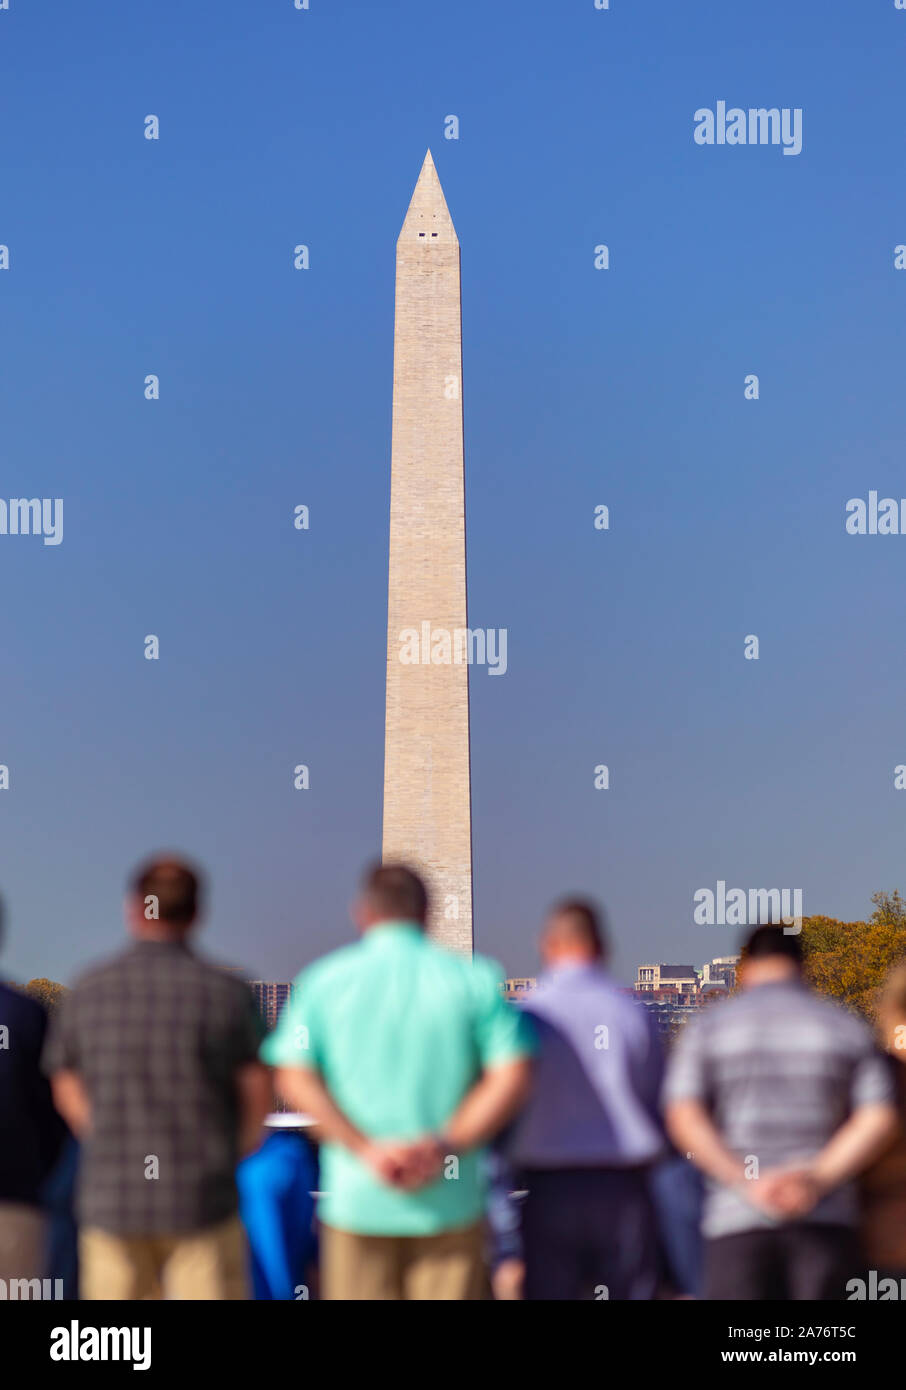 WASHINGTON, DC, USA - Groupe de visiteurs sur le National Mall. Washington Monument, ci-dessus. Banque D'Images